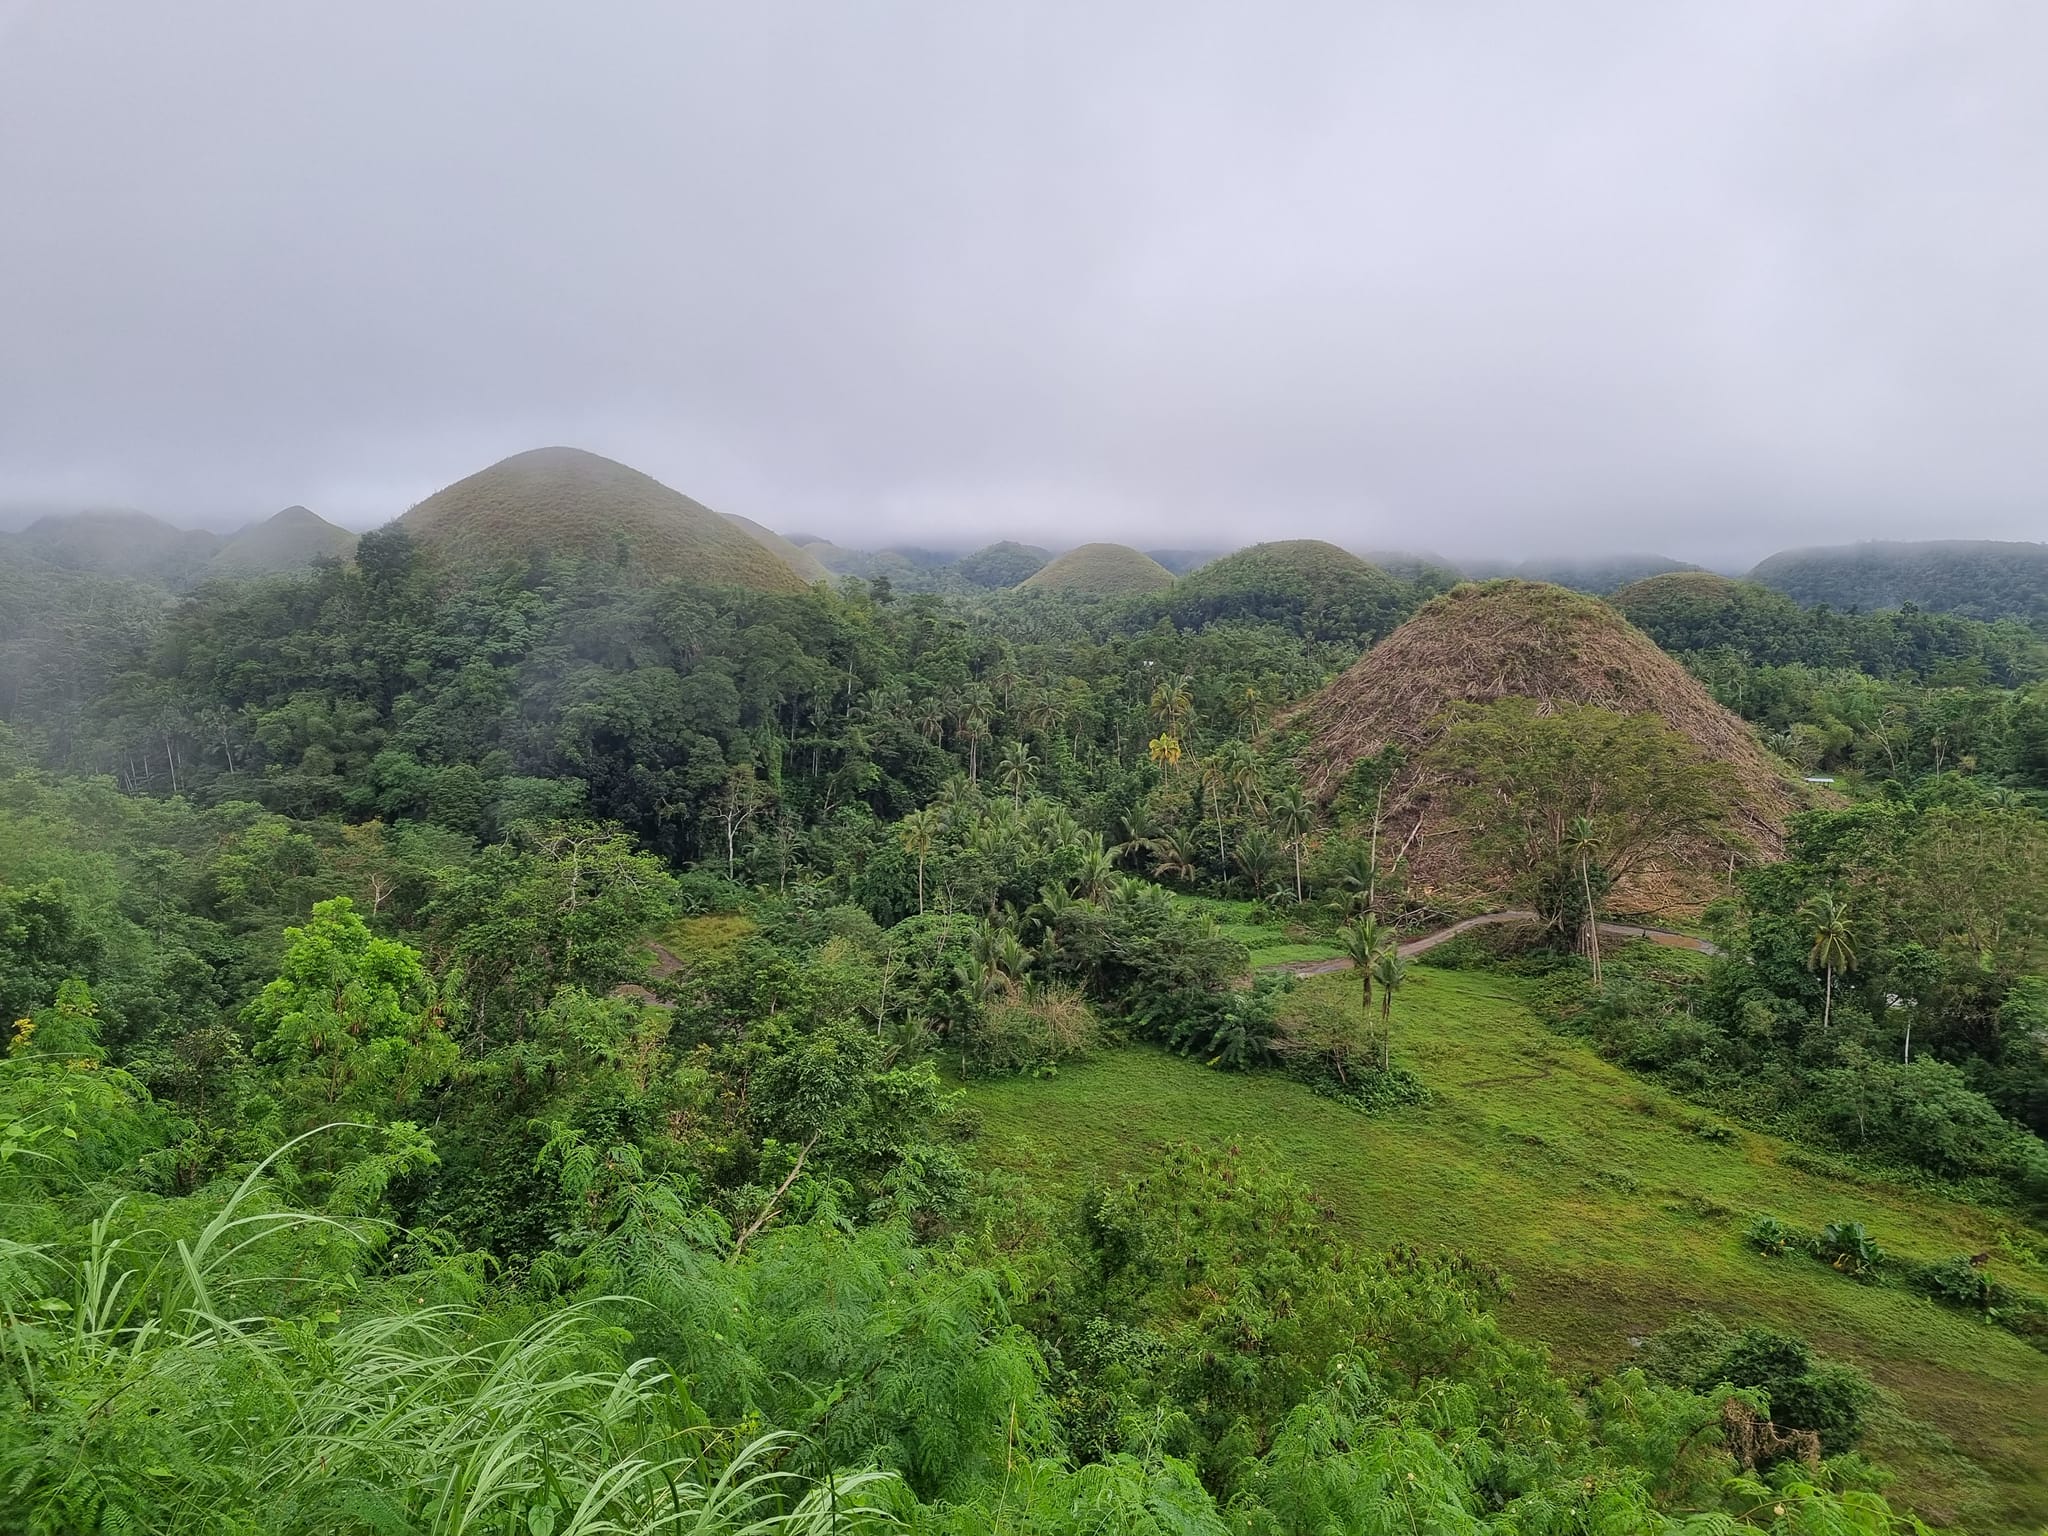 הרי-השוקולד באי בוהול פיליפינים